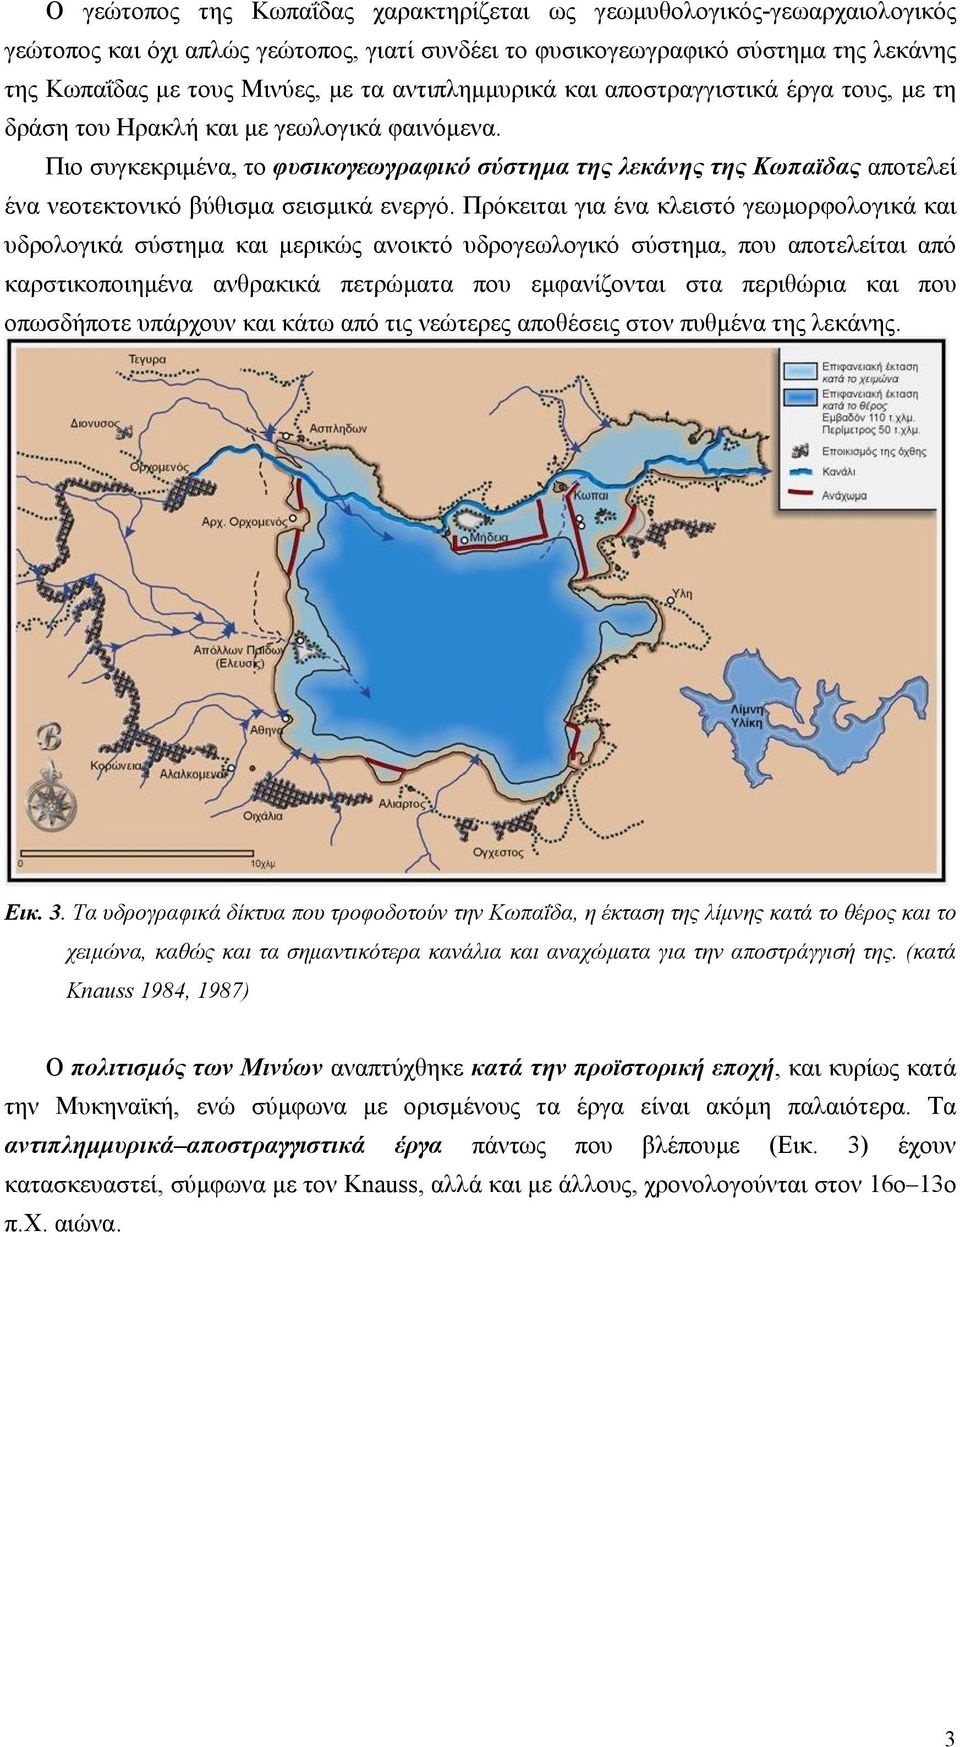 Πιο συγκεκριμένα, το φυσικογεωγραφικό σύστημα της λεκάνης της Κωπαϊδας αποτελεί ένα νεοτεκτονικό βύθισμα σεισμικά ενεργό.